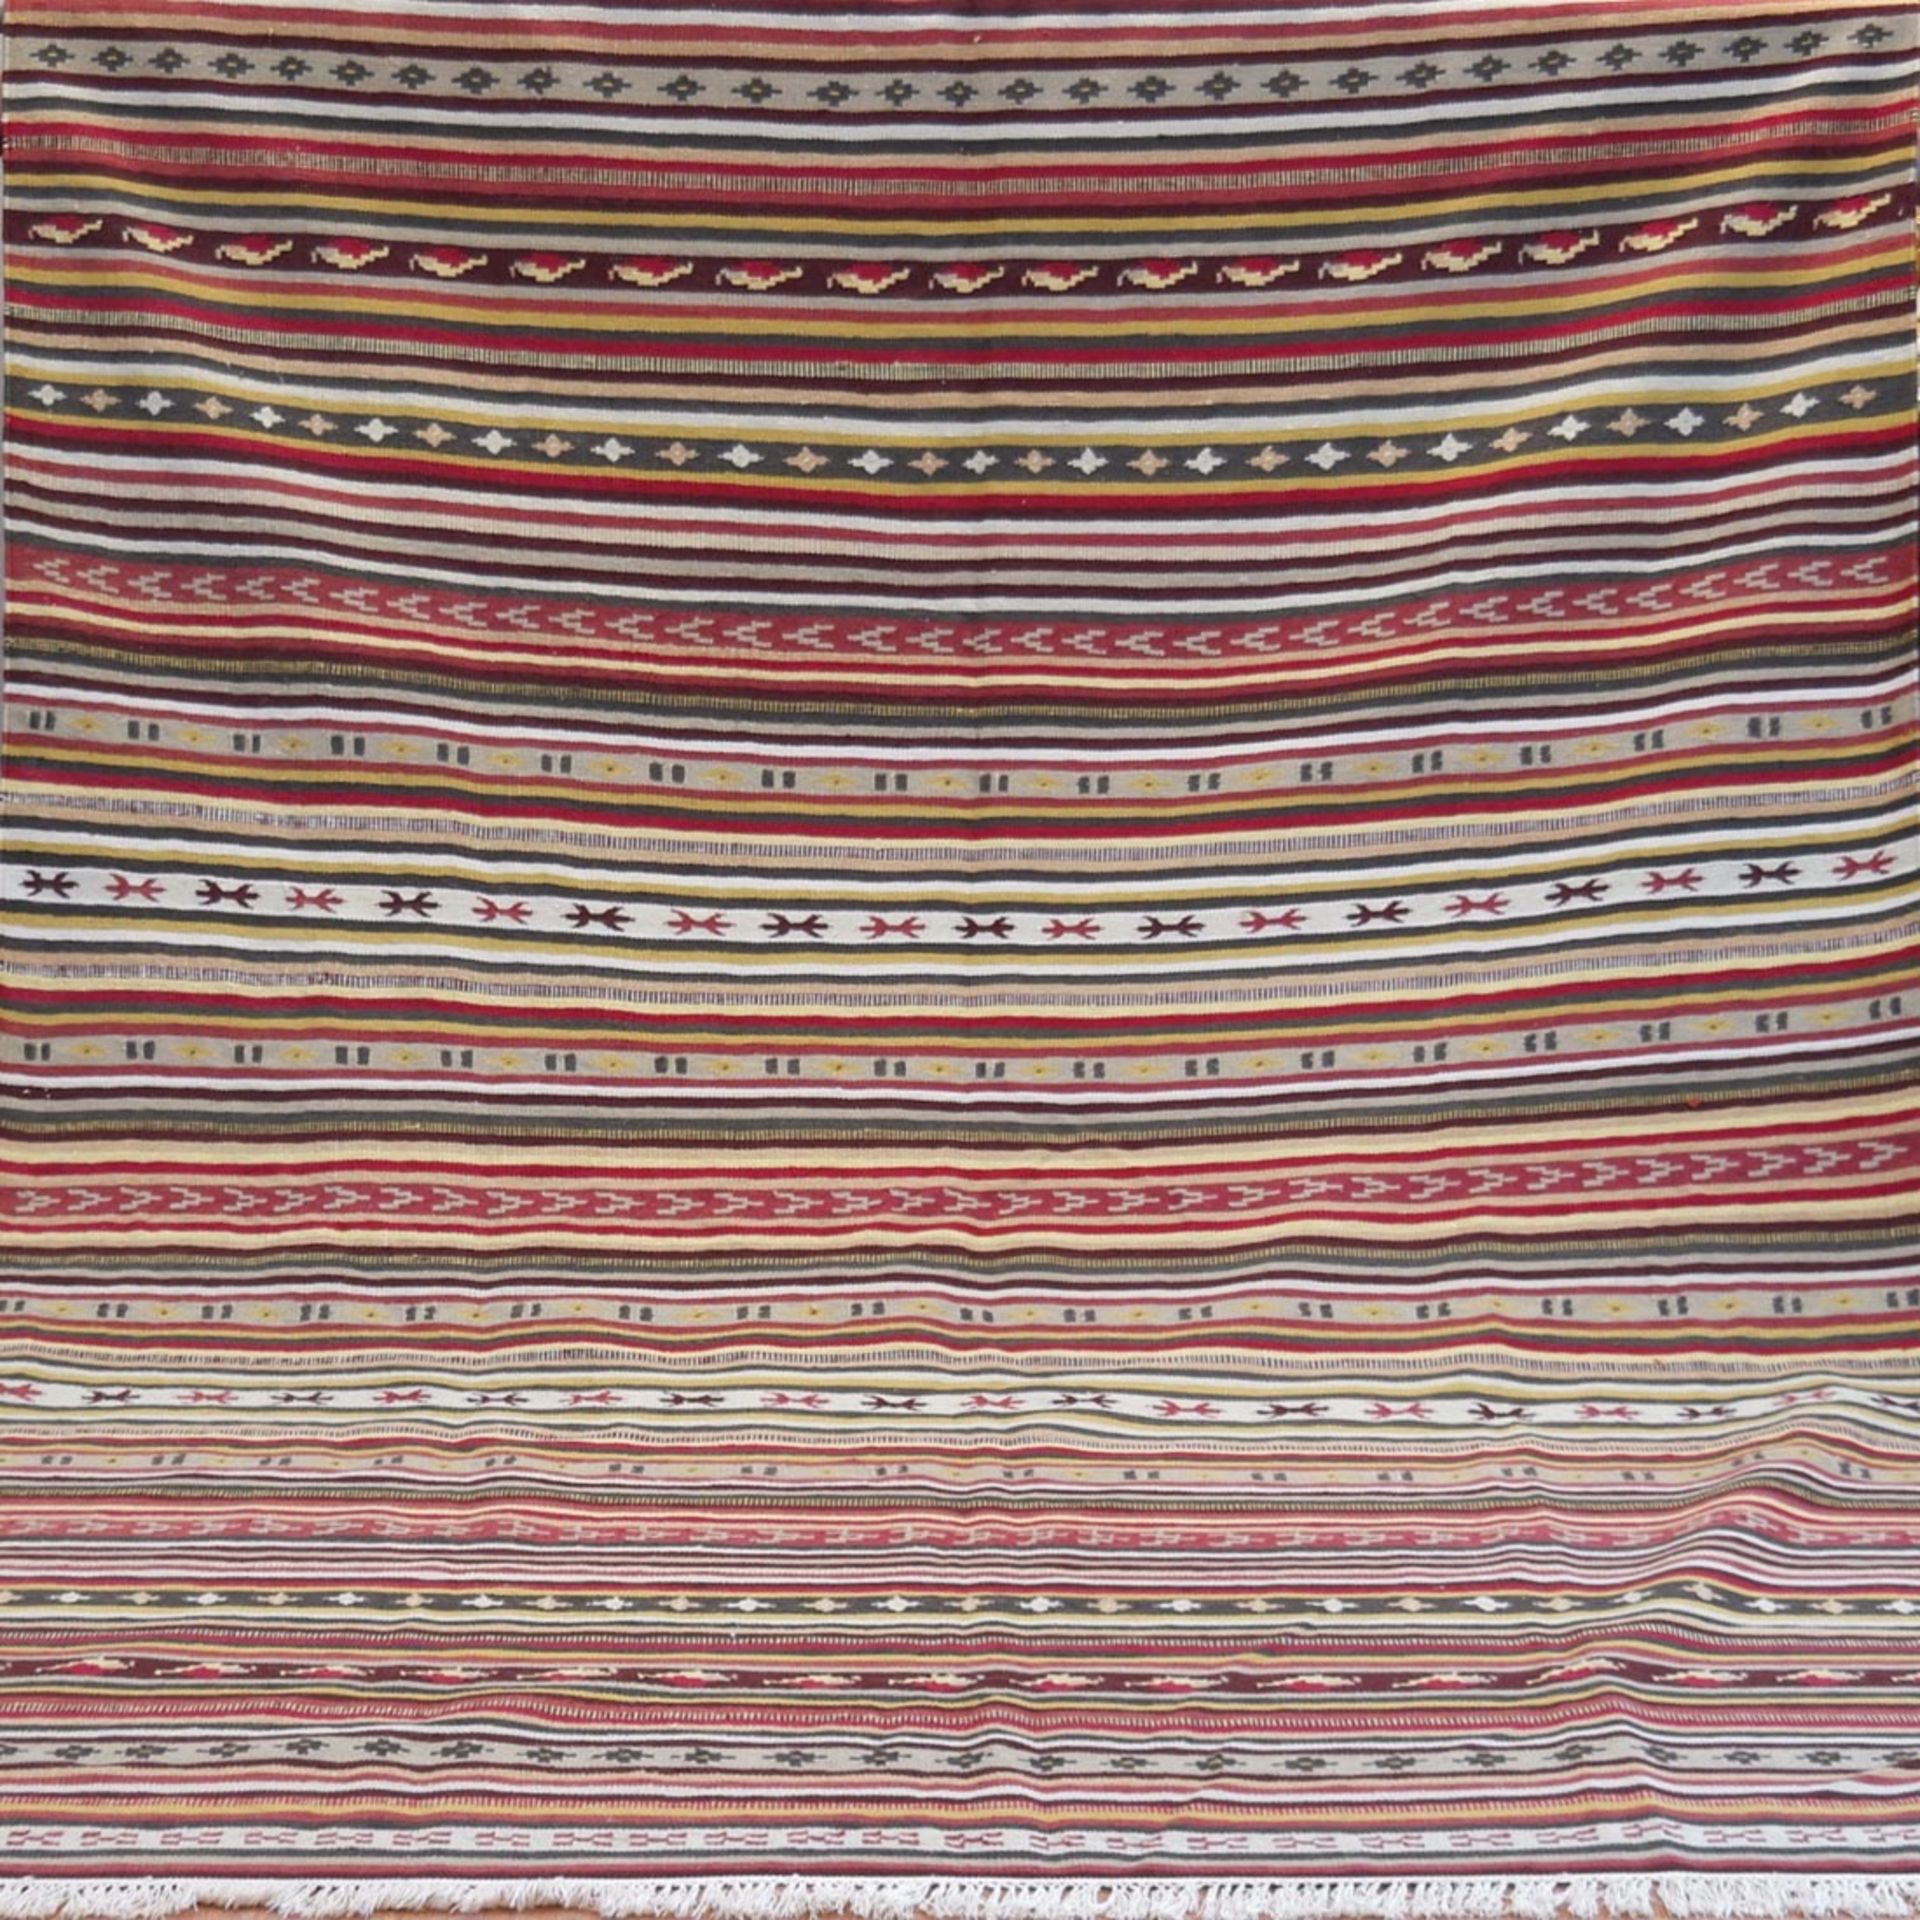 Türkischer Kelim, mehrfarbig, Streifenmuster, 1 kl. Loch, 300x200 cm